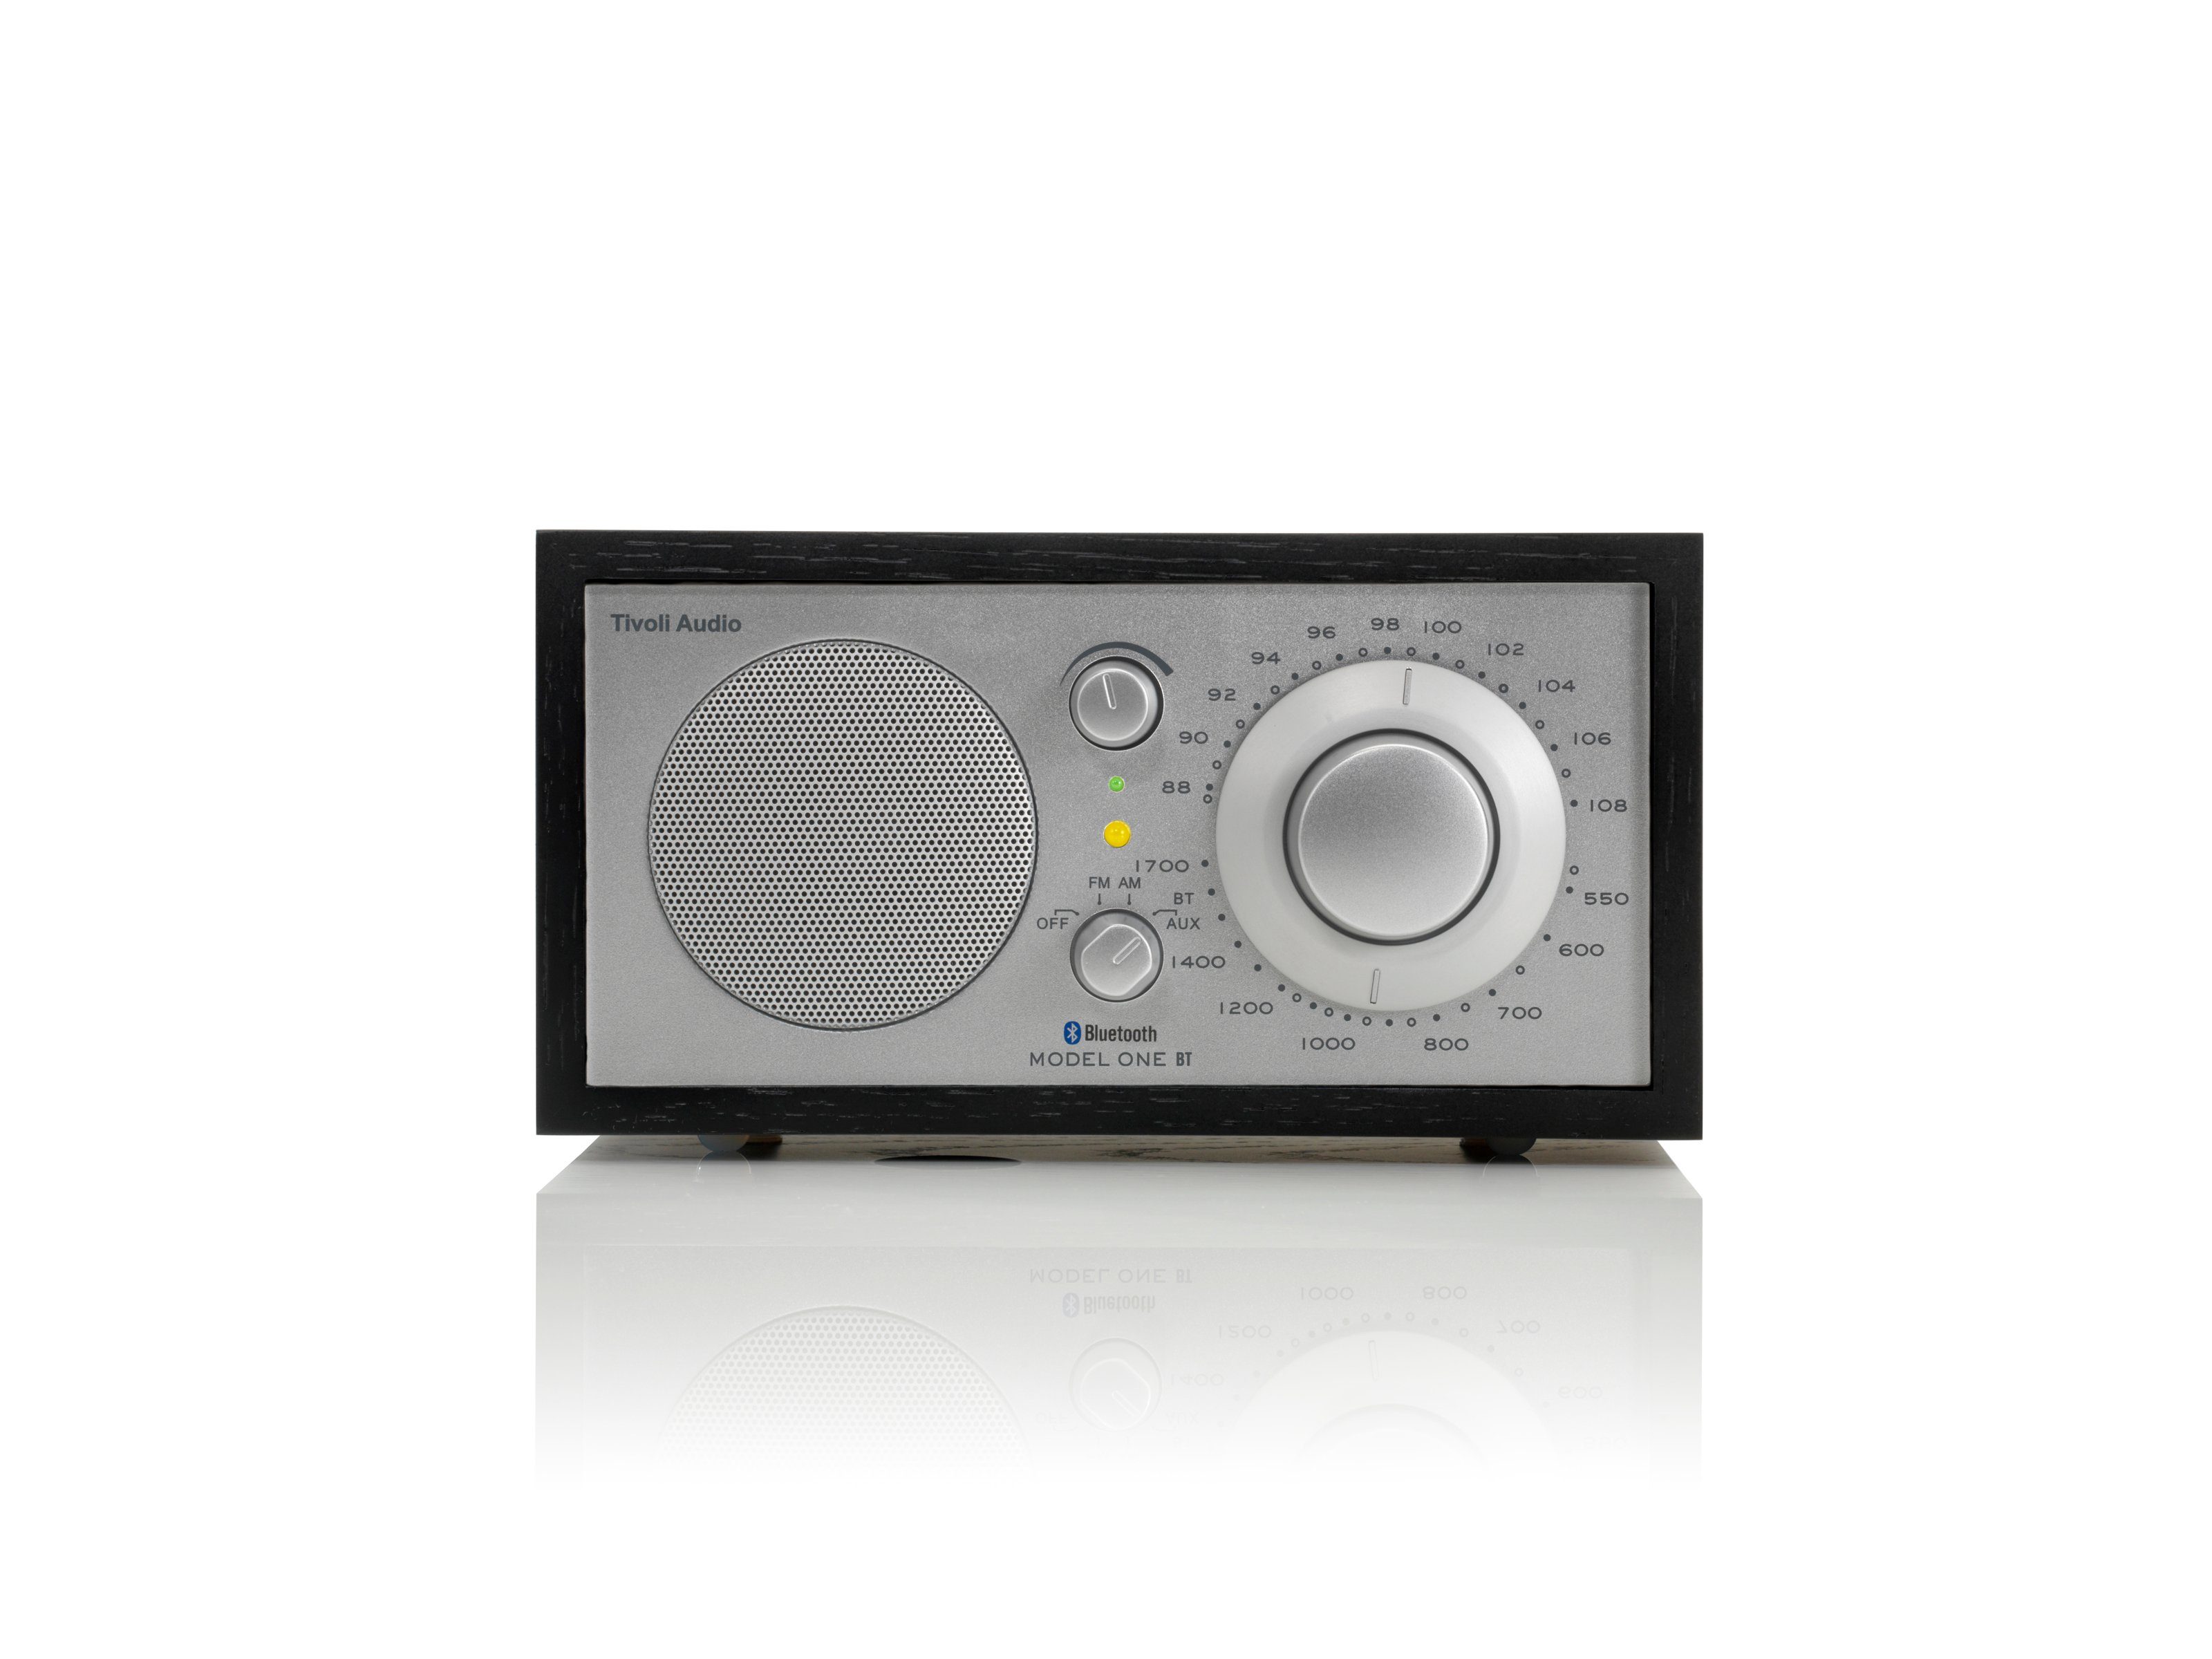 Schwarz/Silber Tivoli Küchen-Radio) (FM-Tuner, Tisch-Radio, UKW-Radio BT Retro-Optik, Bluetooth, Echtholz-Gehäuse, Model One Audio